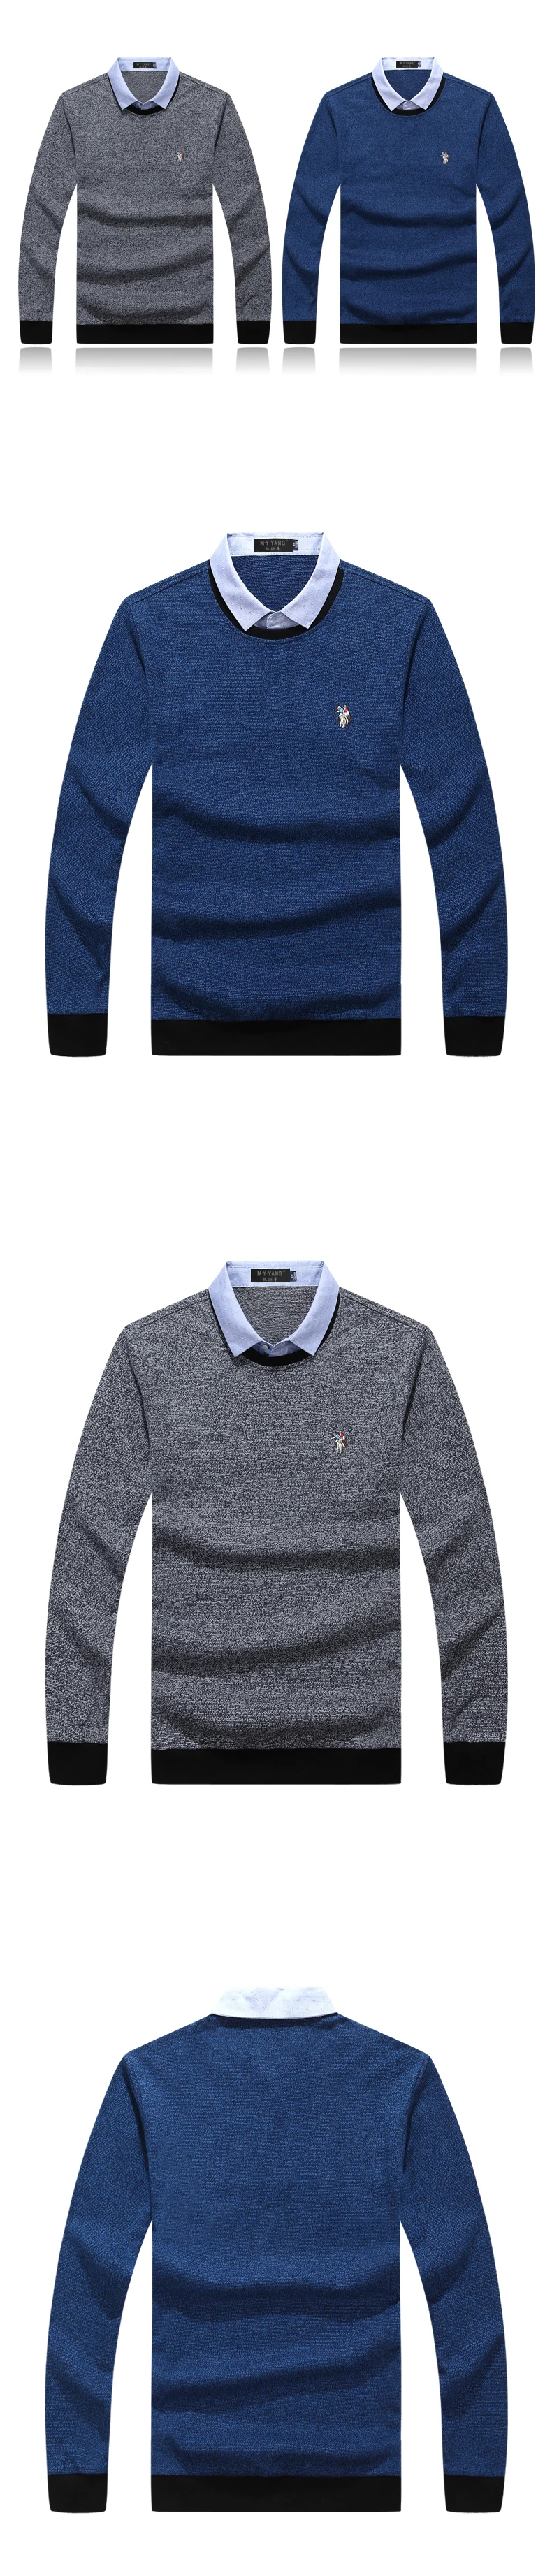 Хлопковый мужской свитер, пуловер с длинным рукавом, мужская рубашка с воротником, поддельные свитера из двух частей, топы, облегающая трикотажная одежда